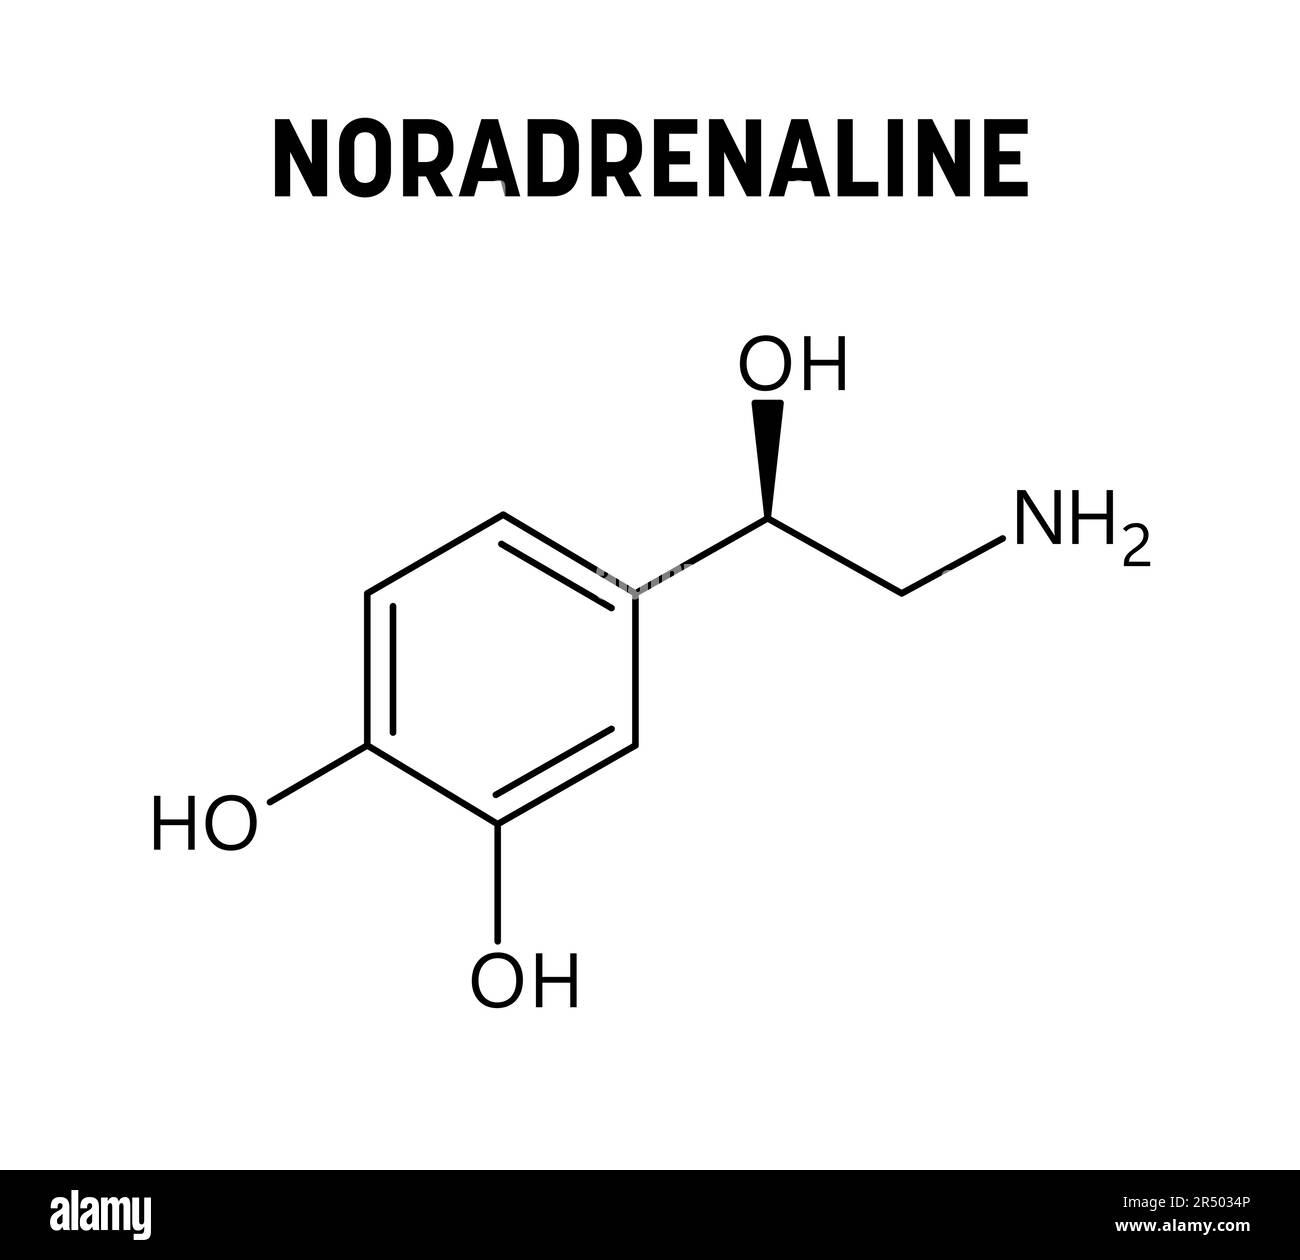 Struttura molecolare noradrenalina. La noradrenalina, o norepinefrina, è un neurotrasmettitore e un ormone nel corpo umano. Formula strutturale vettoriale del composto chimico. Illustrazione Vettoriale